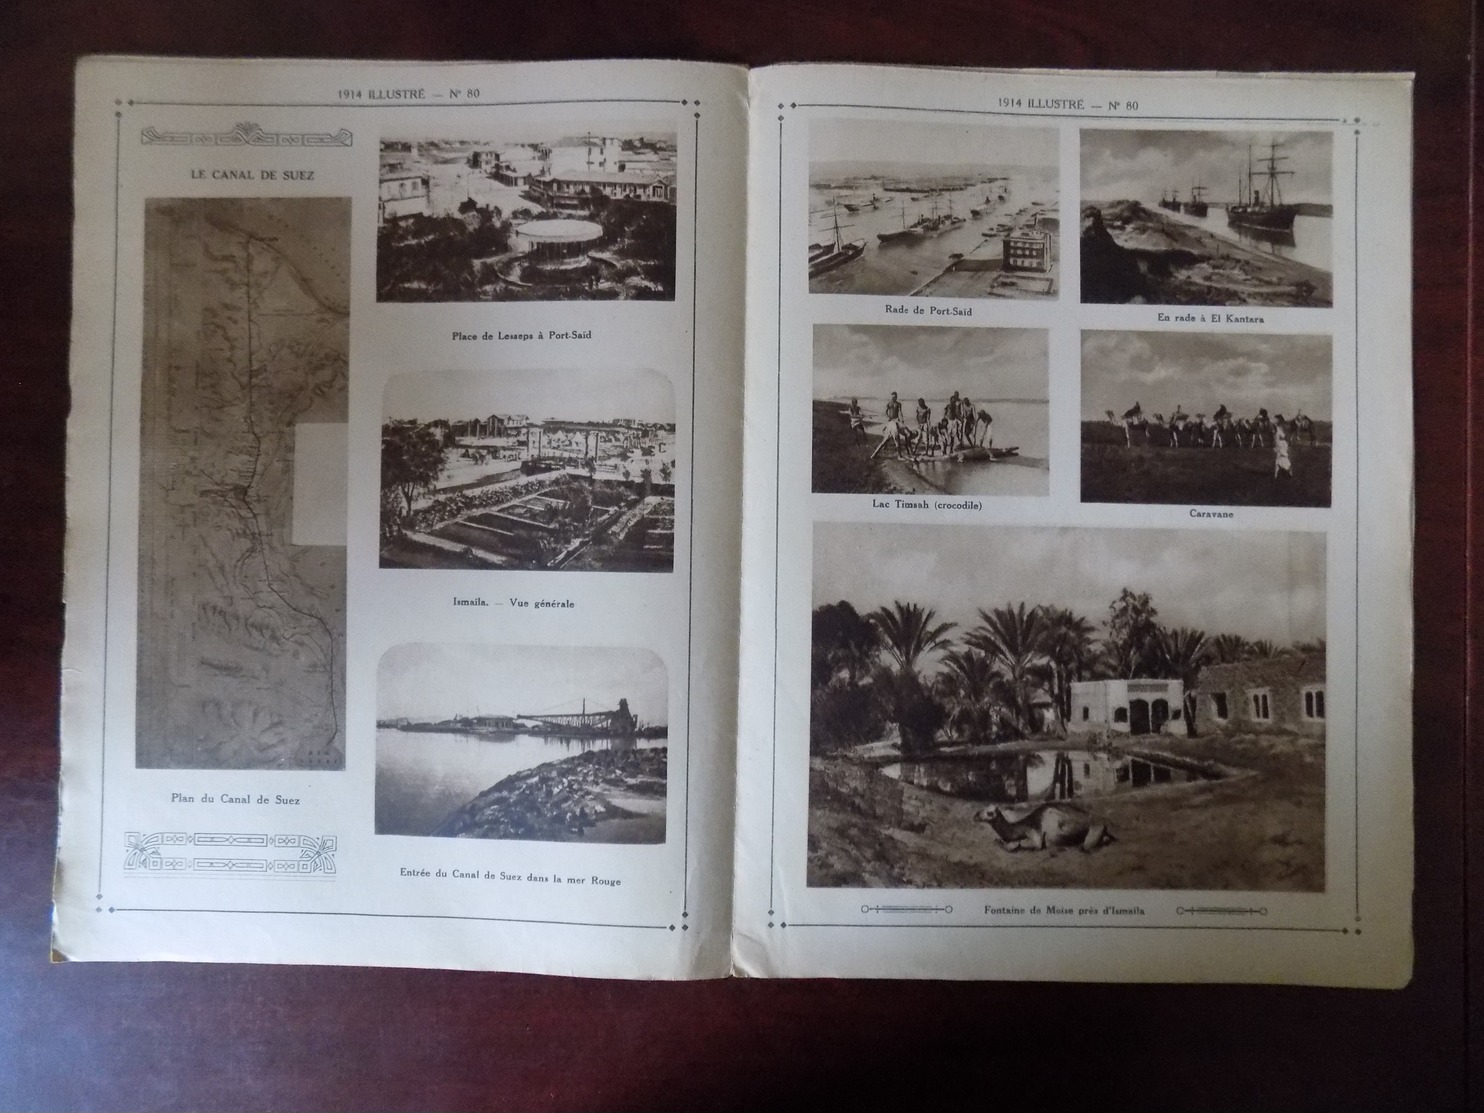 1914 Illustré N° 80 Dunkerque - Canal De Suez - Ismaila - Chine - Bruxelles " Oeuvre De L'épluchure Pommes De Terre " - Oorlog 1914-18